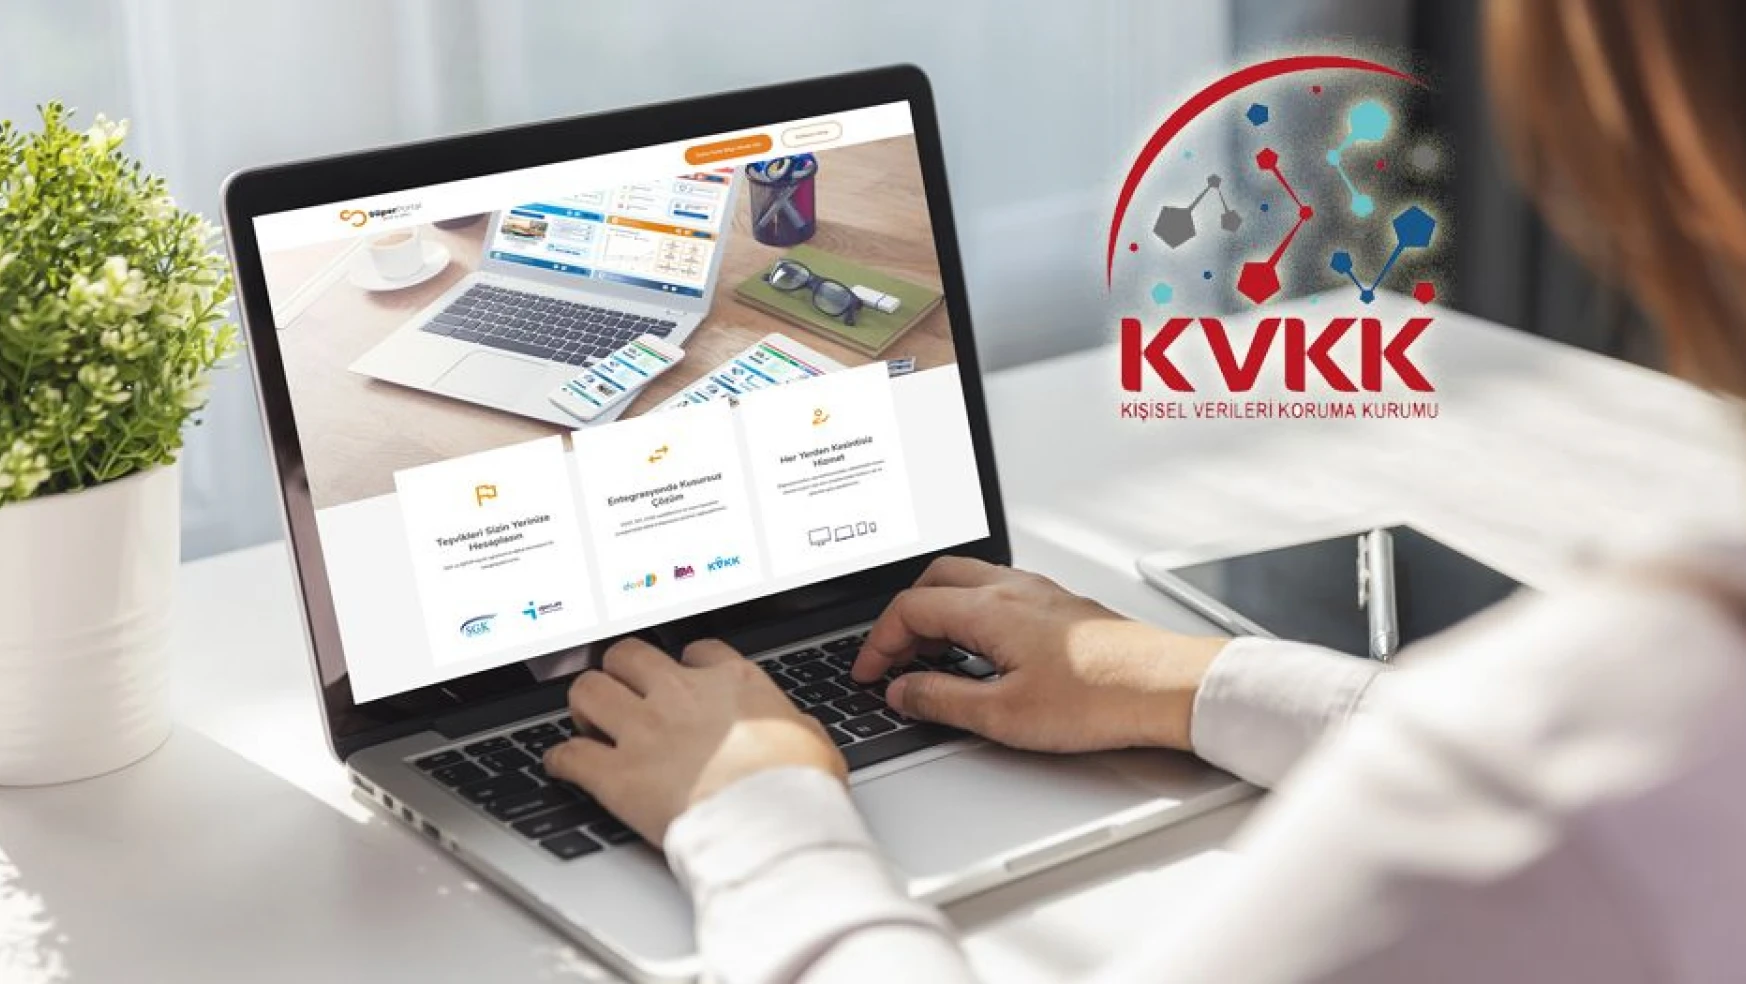 KVKK veri ihlallerine 50 milyon lira ceza kesti